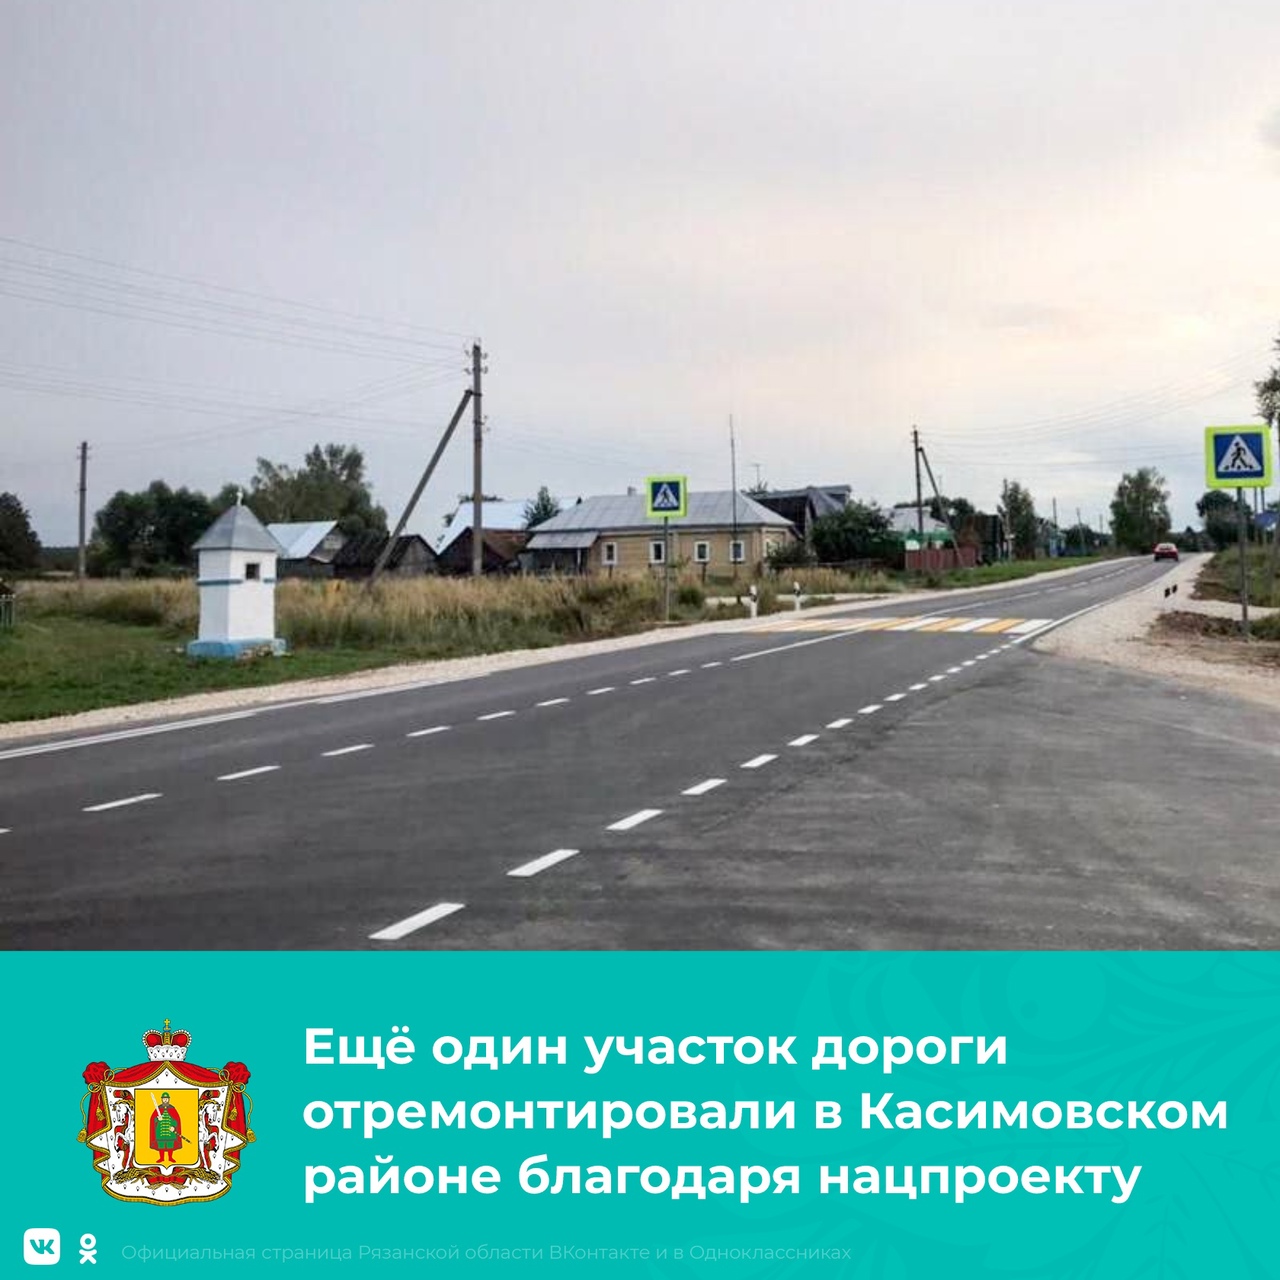 В Касимовском районе отремонтировали 10-километровый участок дороги